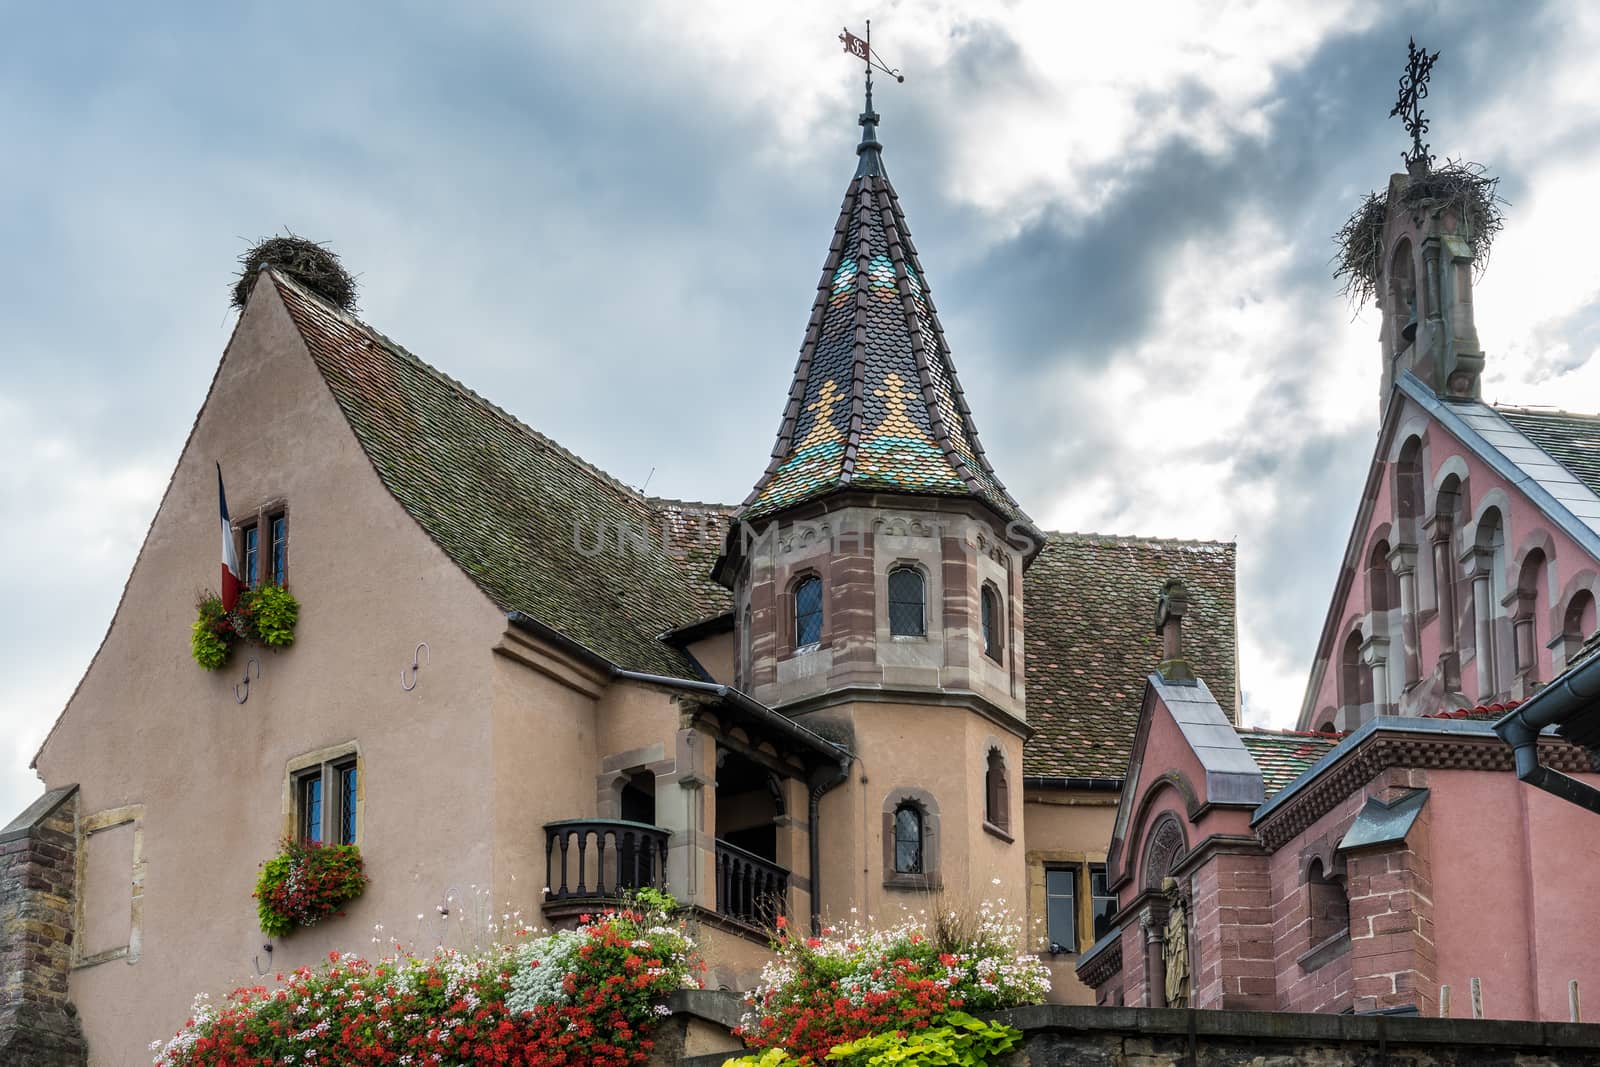 Chateau in Eguisheim in Haut-Rhin Alsace